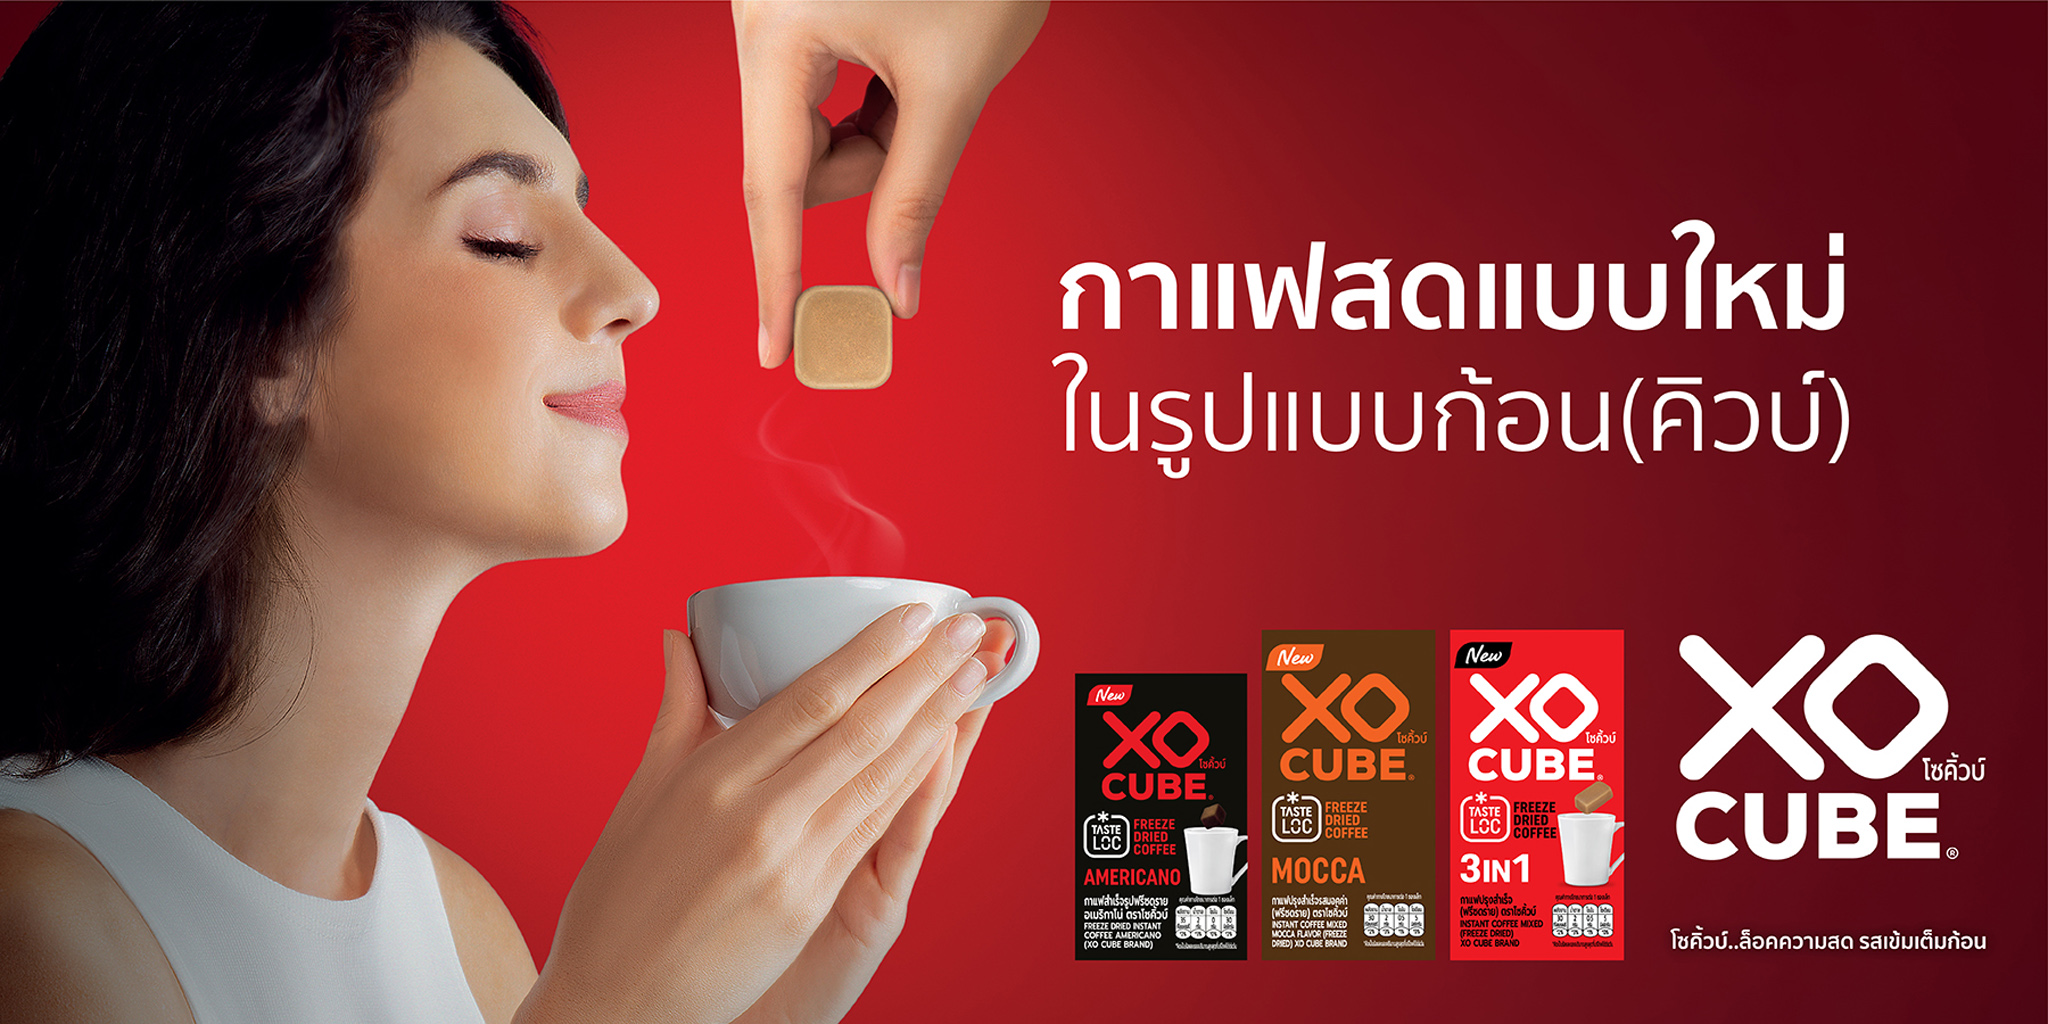 ใหม่ท้าให้ลอง!! “โซคิ้วบ์ - XO CUBE” กาแฟสดรูปแบบก้อน Freeze Dried เจ้าแรกในไทย “ล็อคความสด รูปแบบก้อน”